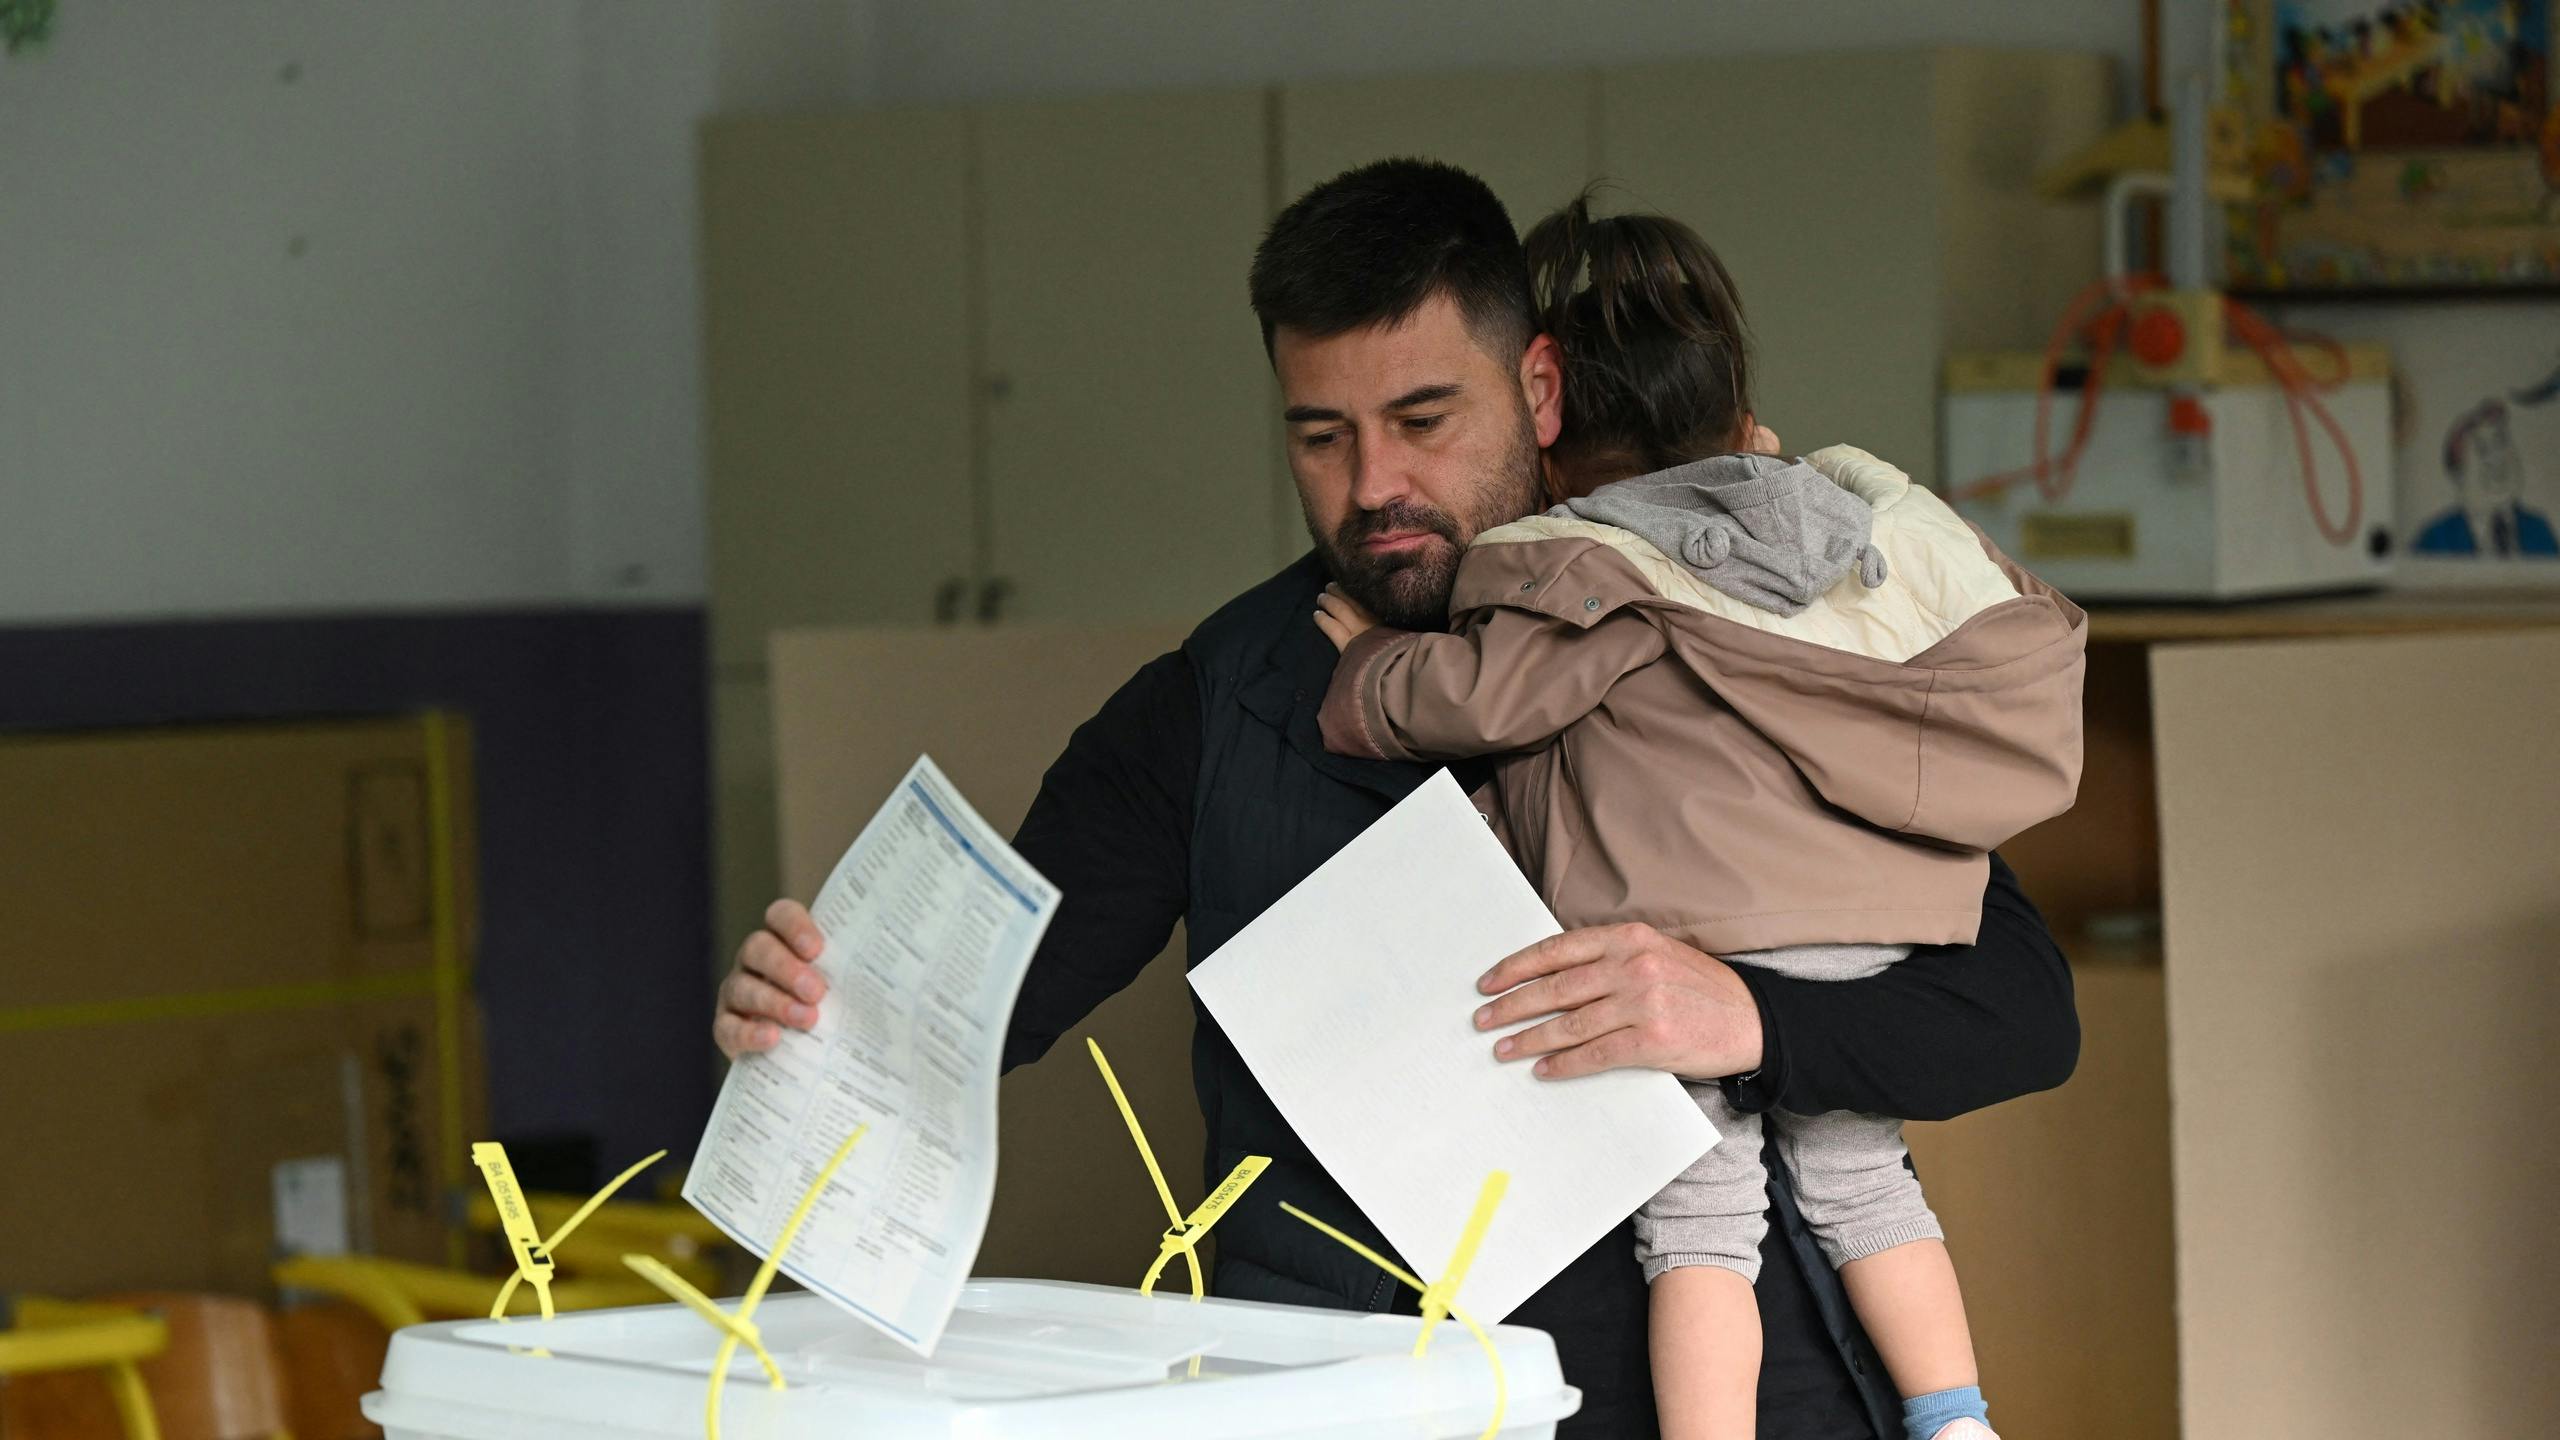 Nationalisme en haatzaaien staan centraal in Bosnische verkiezingen